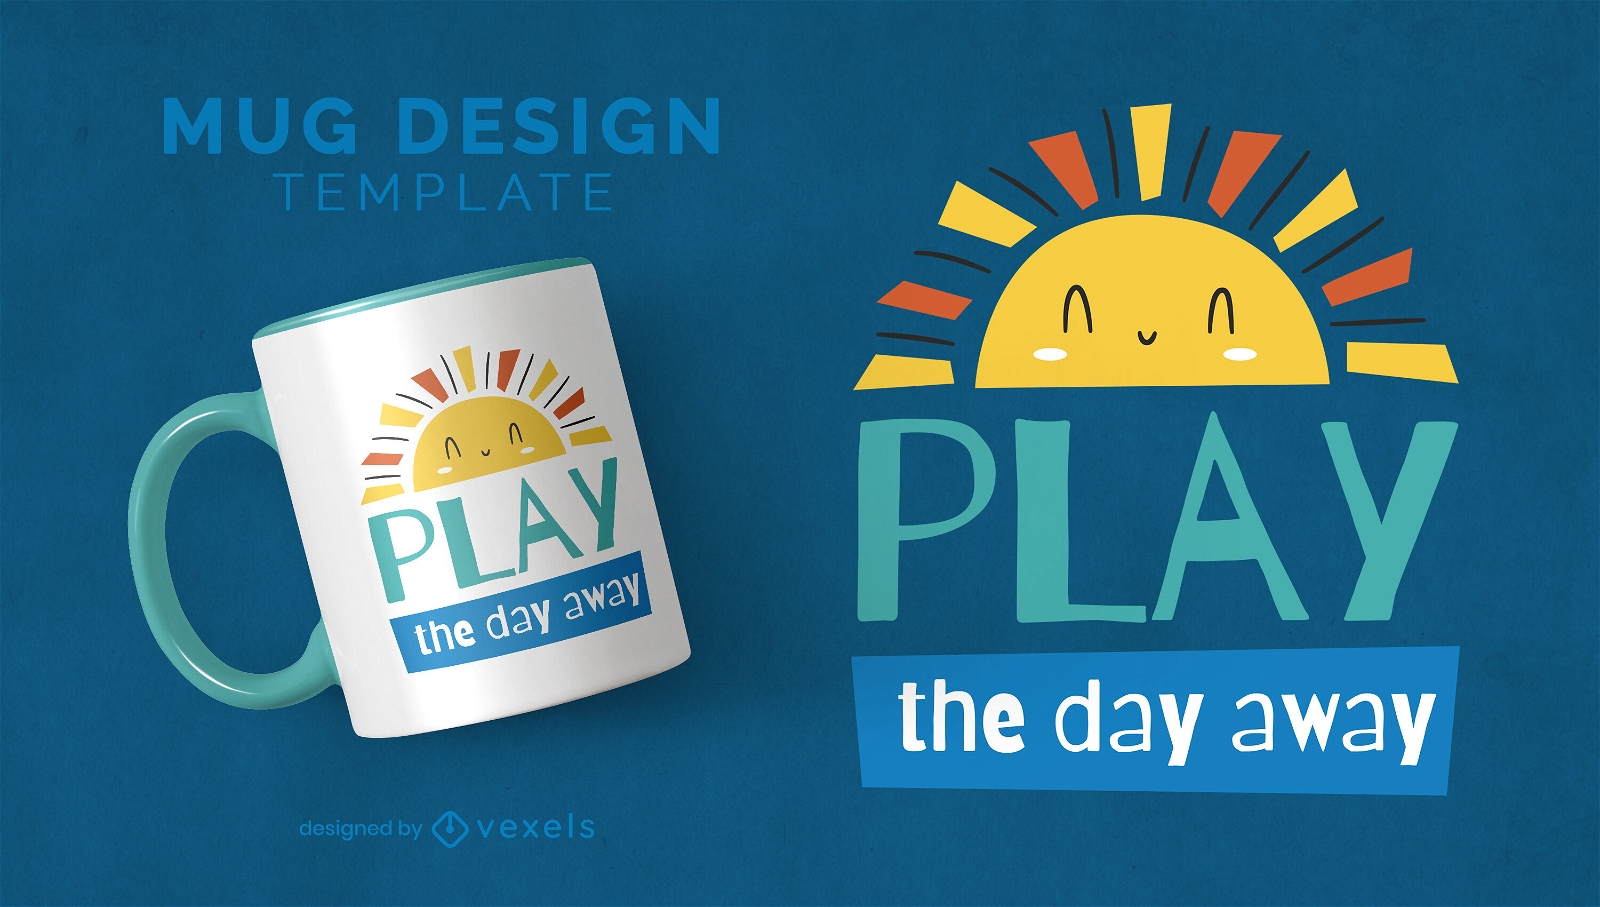 Play the day away sunny mug design